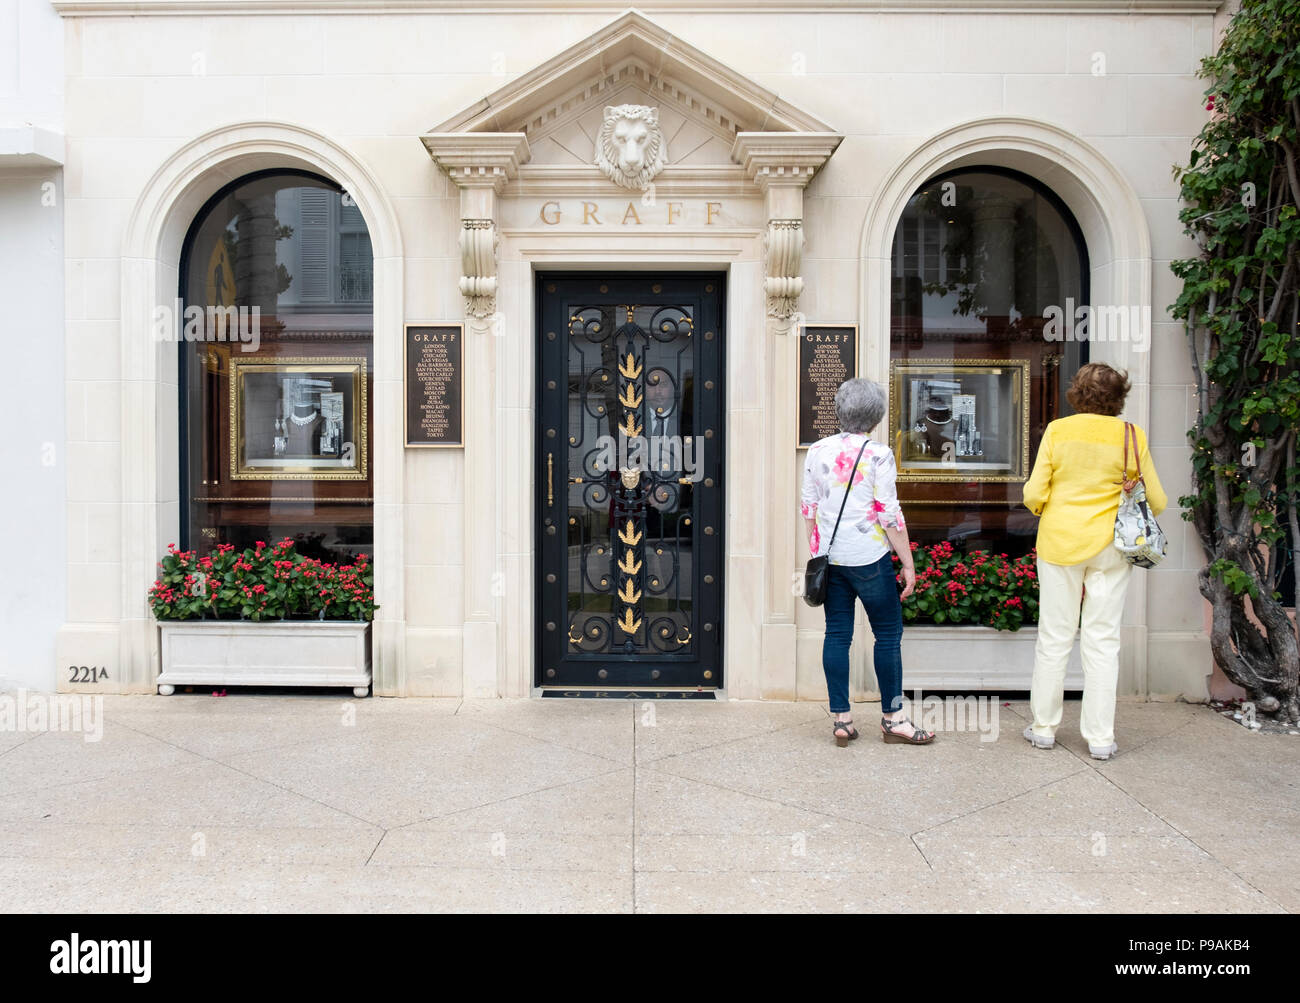 Die Fassade und Eingang Graff, eine High-end Juweliergeschäft auf der Worth Avenue in Palm Beach, Fl.. Ein Mann steht in der Tür und zwei Frauen durchsuchen Stockfoto